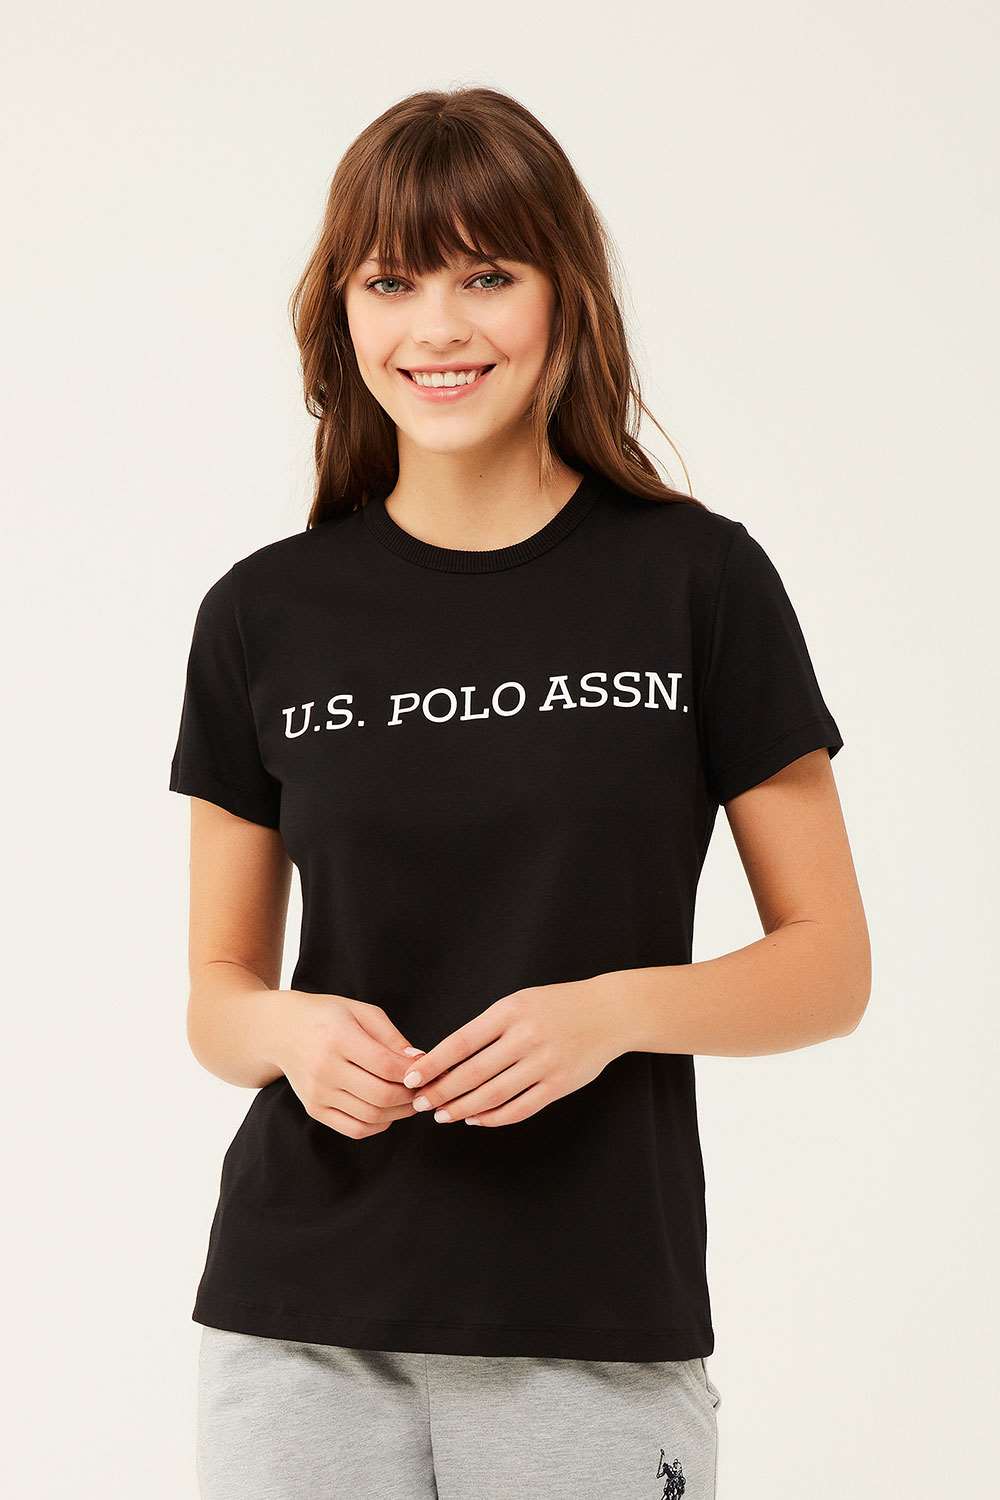 U.S. Polo Assn. Kadın Siyah Yuvarlak Yaka T-shirt | Modcollection.com.tr